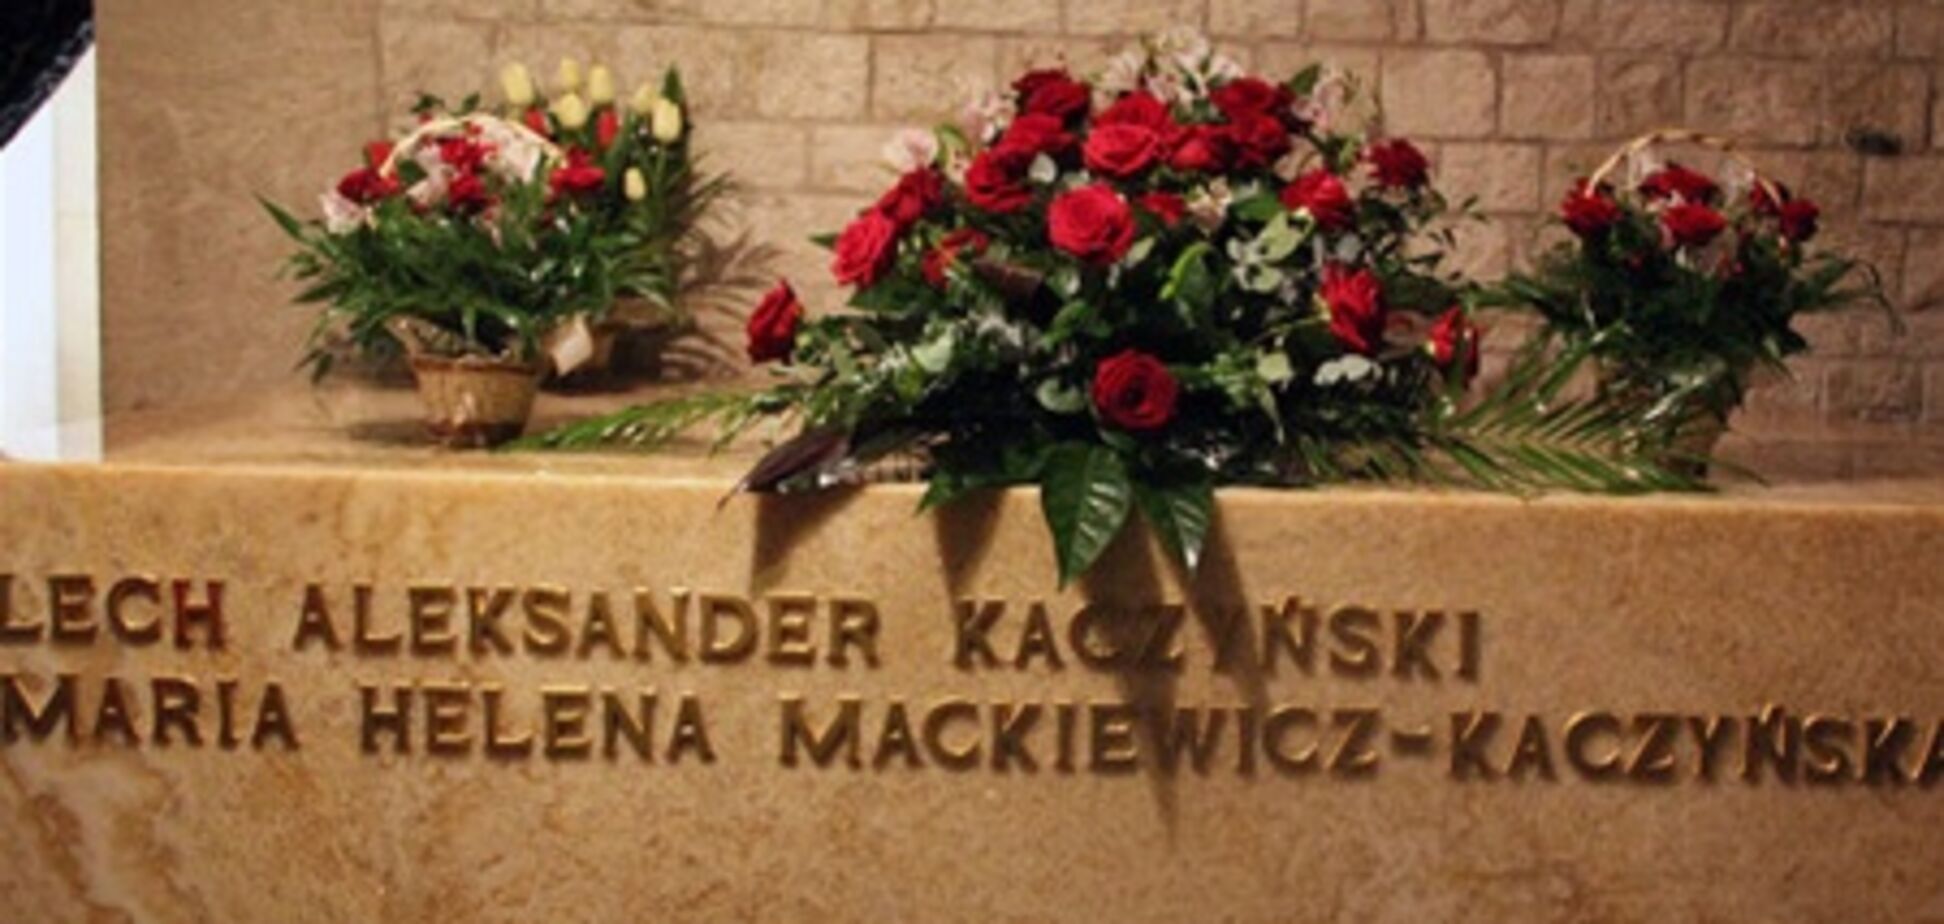 Польща просить РФ видалити з серверів фотографії тіл жертв Смоленської авіакатастрофи